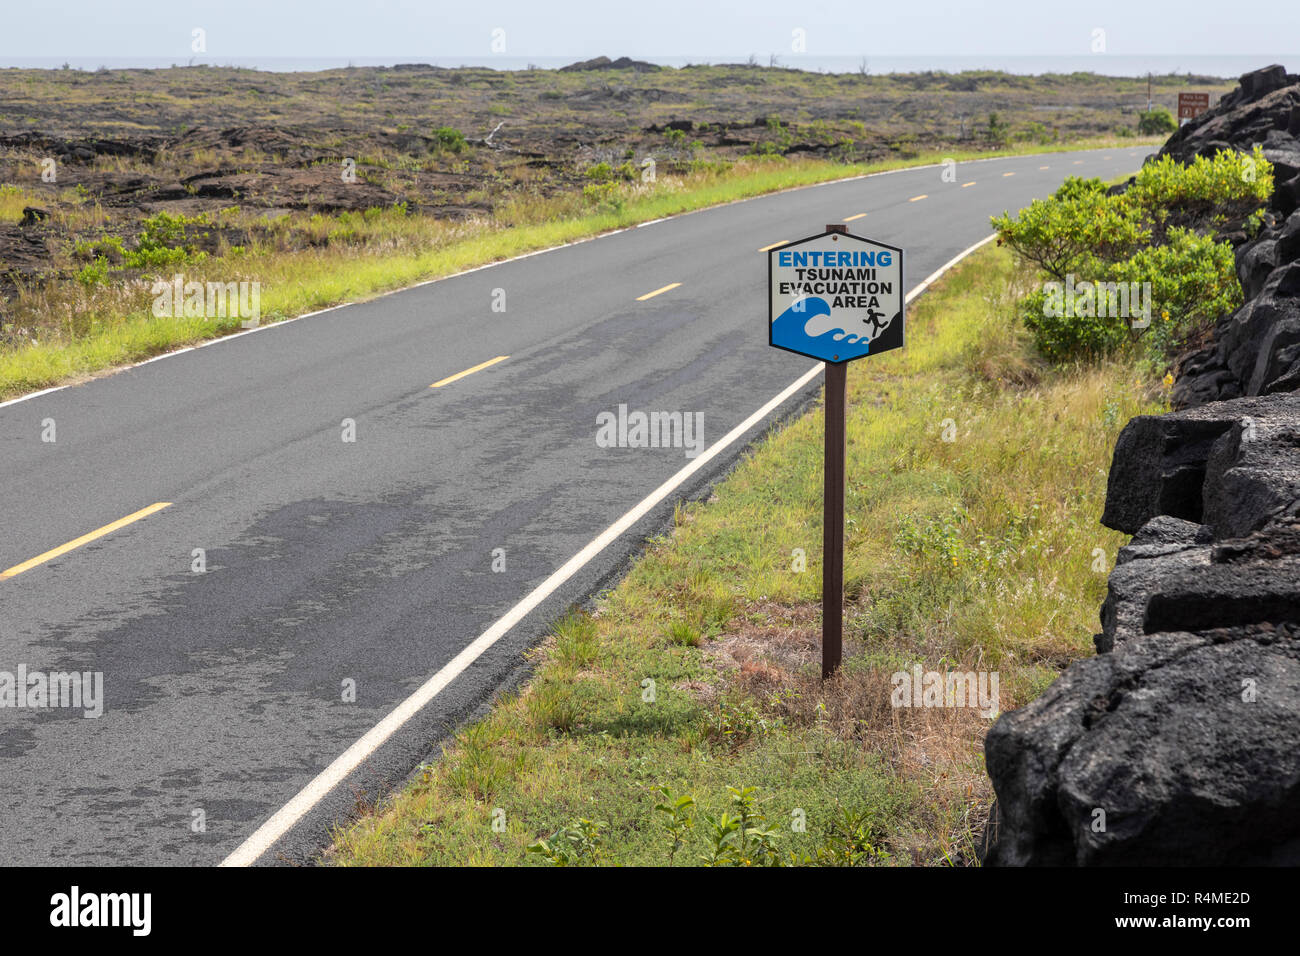 Hawaii Volcanoes National Park, New York - un signe le long de la chaîne de cratères Road à proximité de l'océan Pacifique désigne une zone d'évacuation du tsunami. Banque D'Images